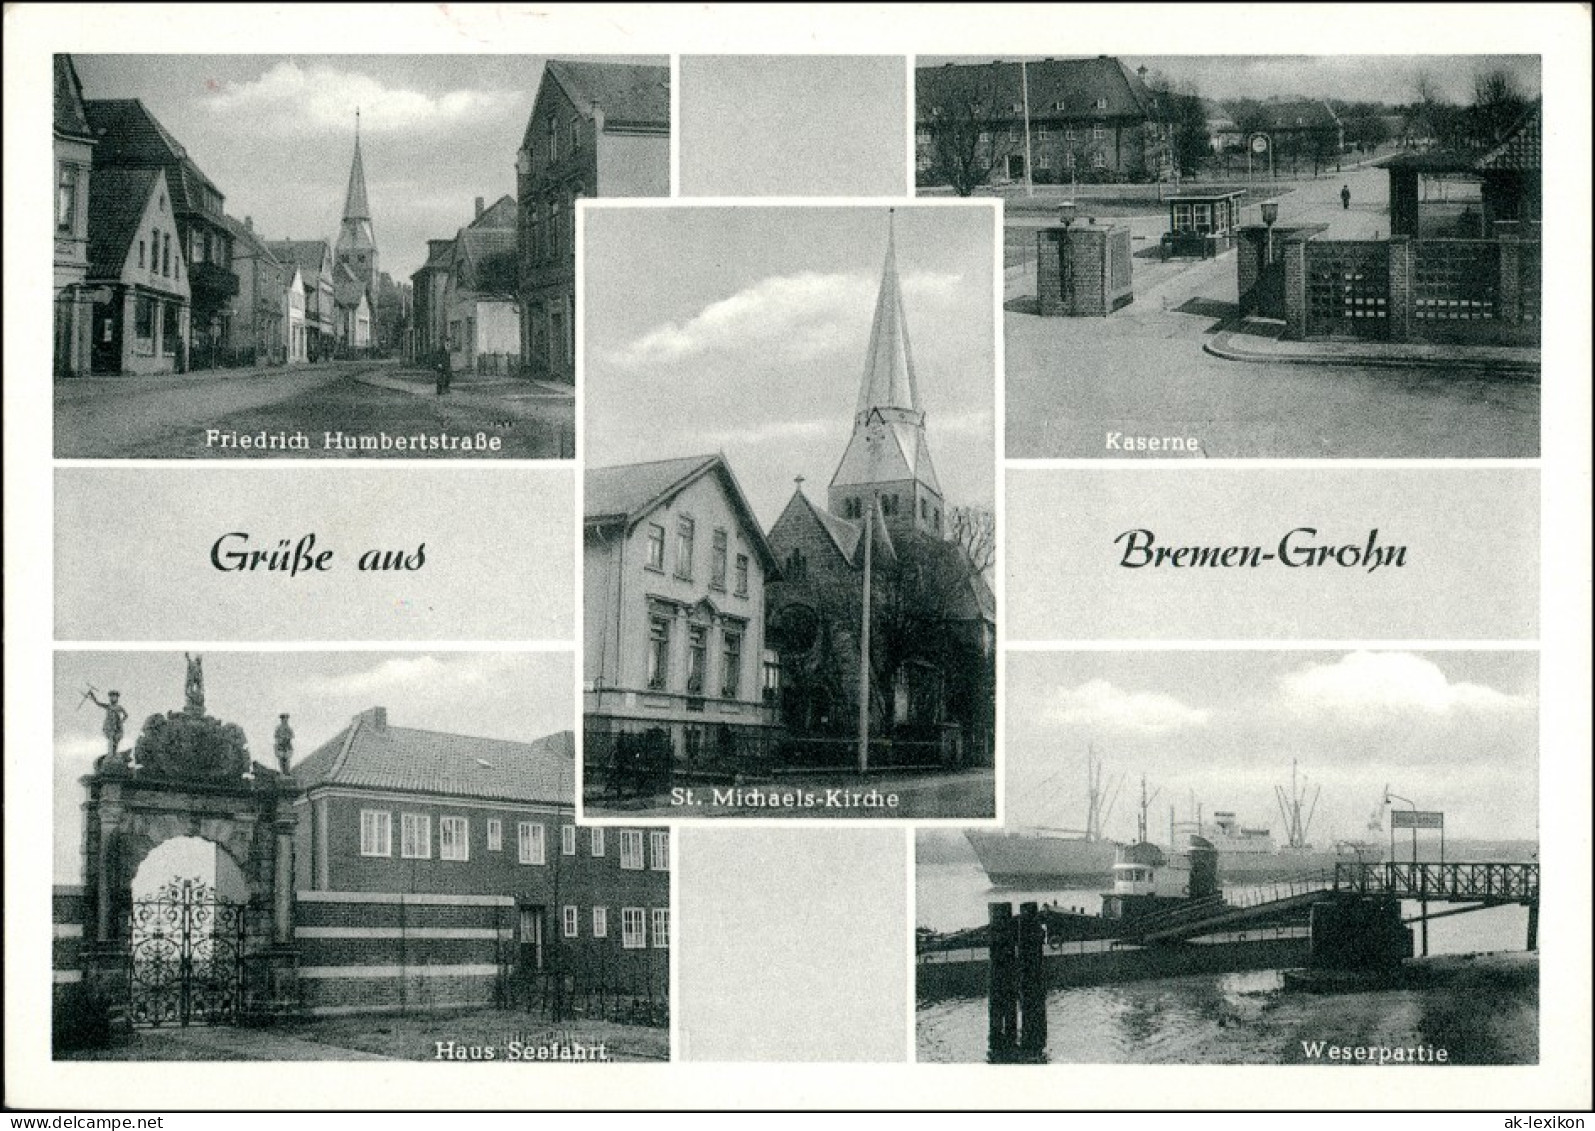 Ansichtskarte Grohn-Bremen 5 Bild: Straßen Und Kaserne 1961 - Bremen